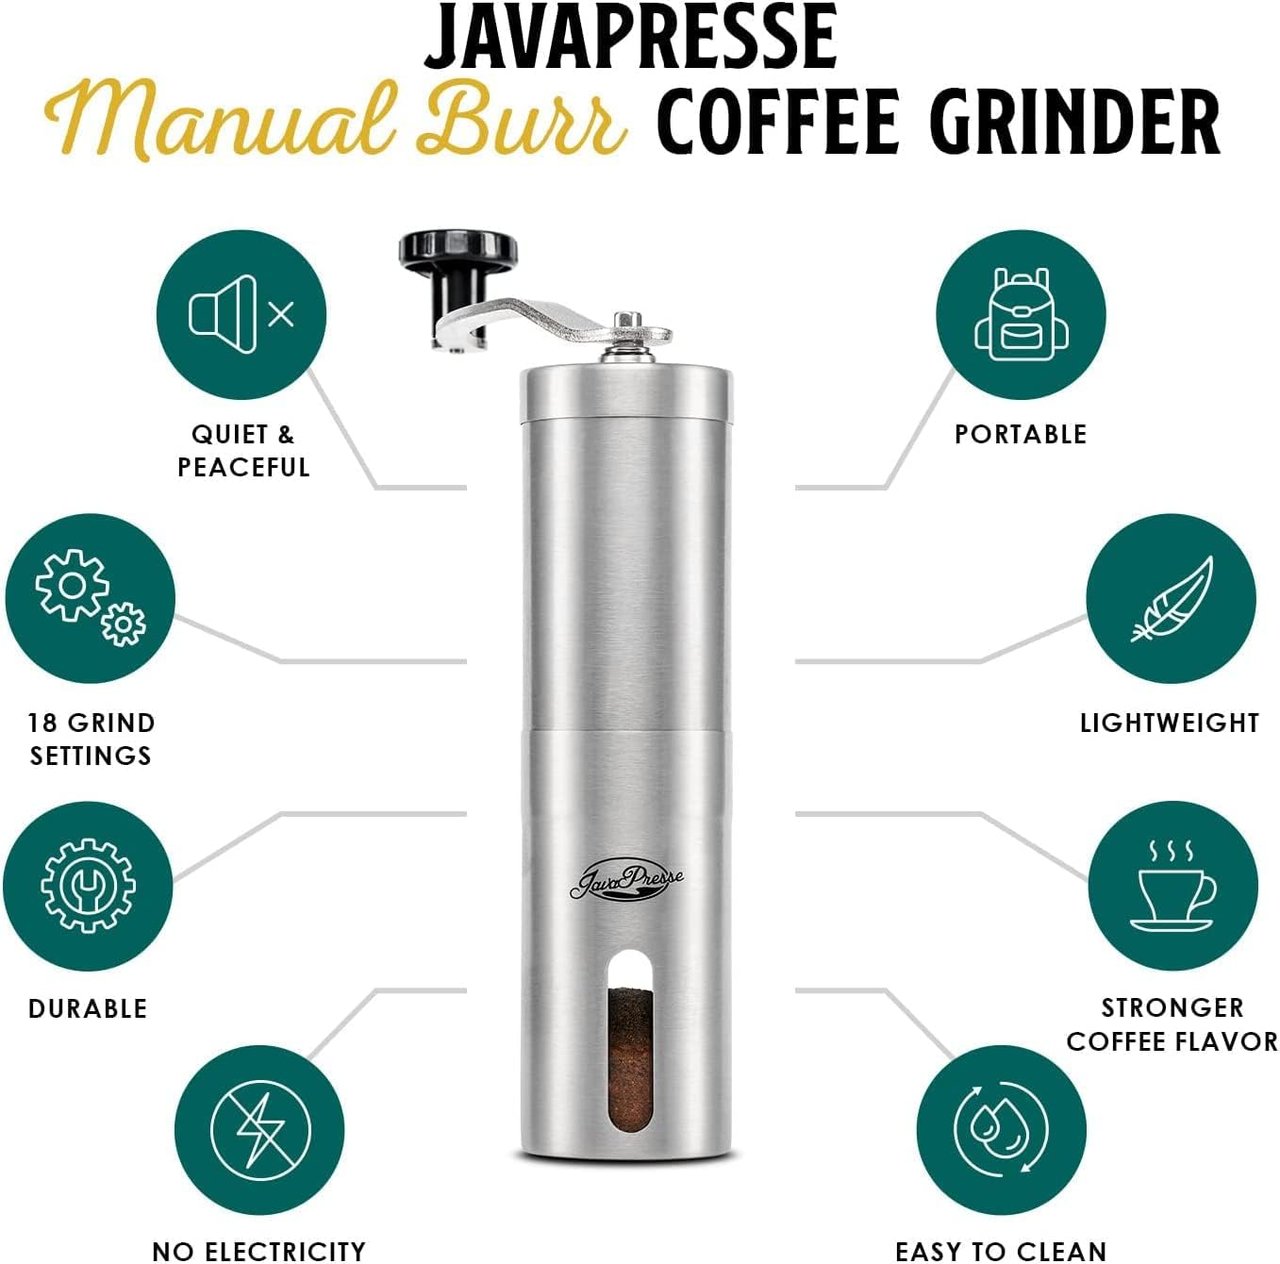 2 JavaPresse Stainless Steel Manual Coffee Grinder